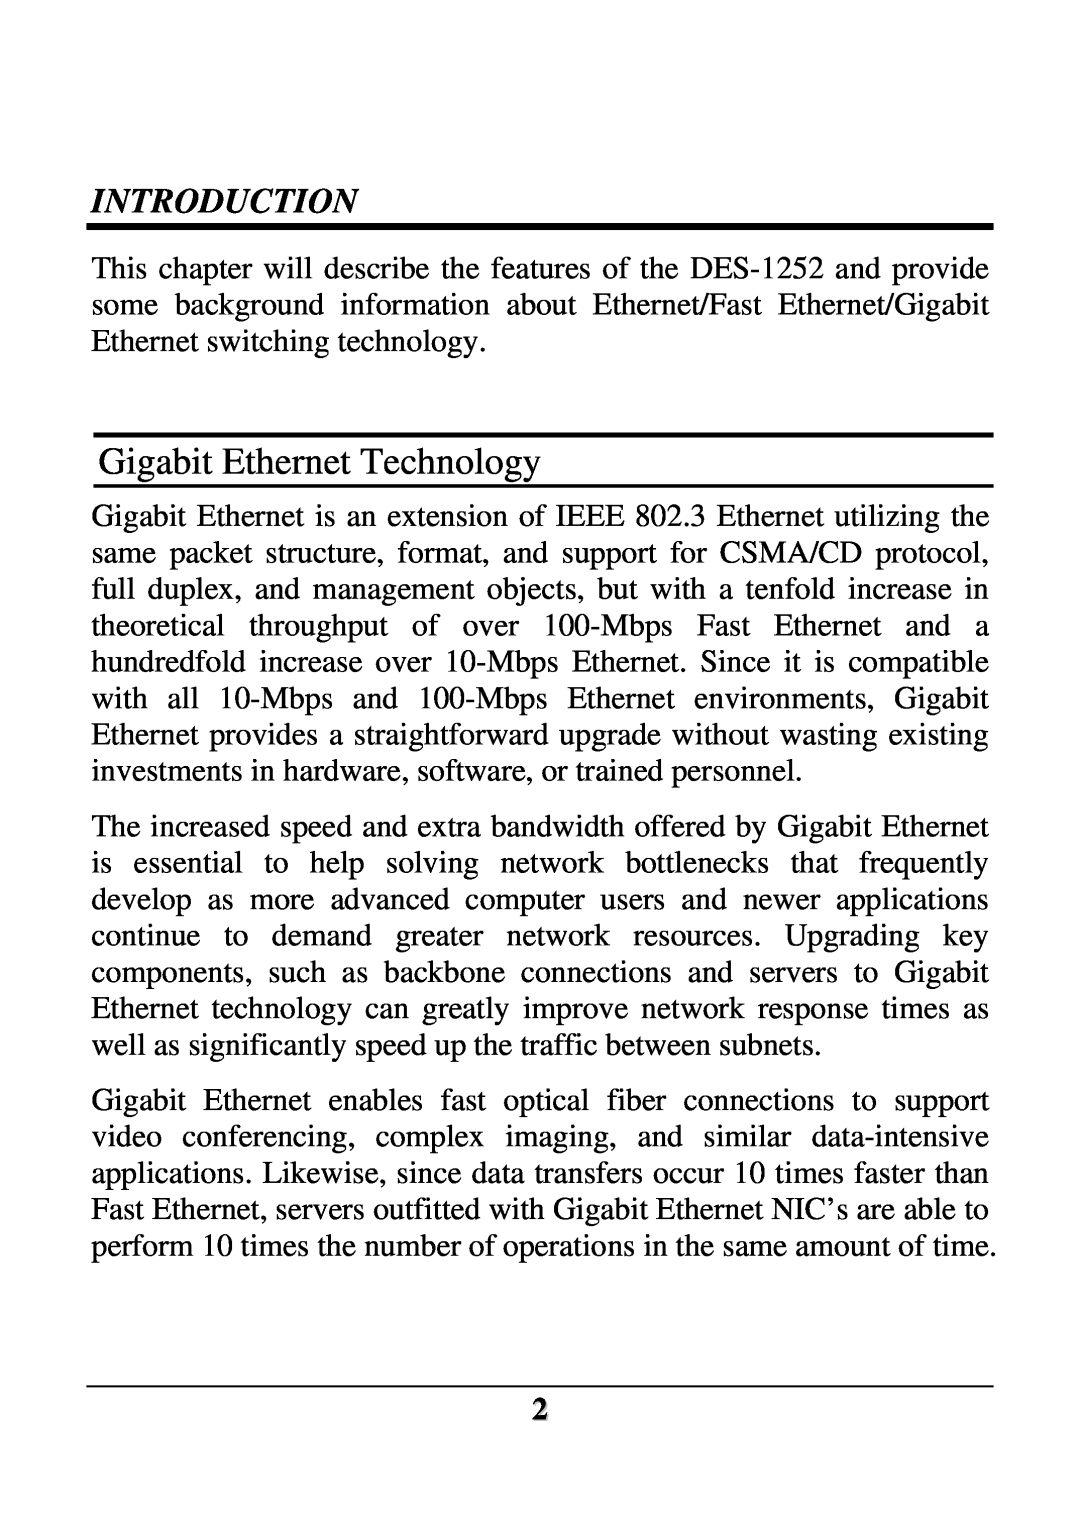 D-Link DES-1252 user manual Gigabit Ethernet Technology, Introduction 